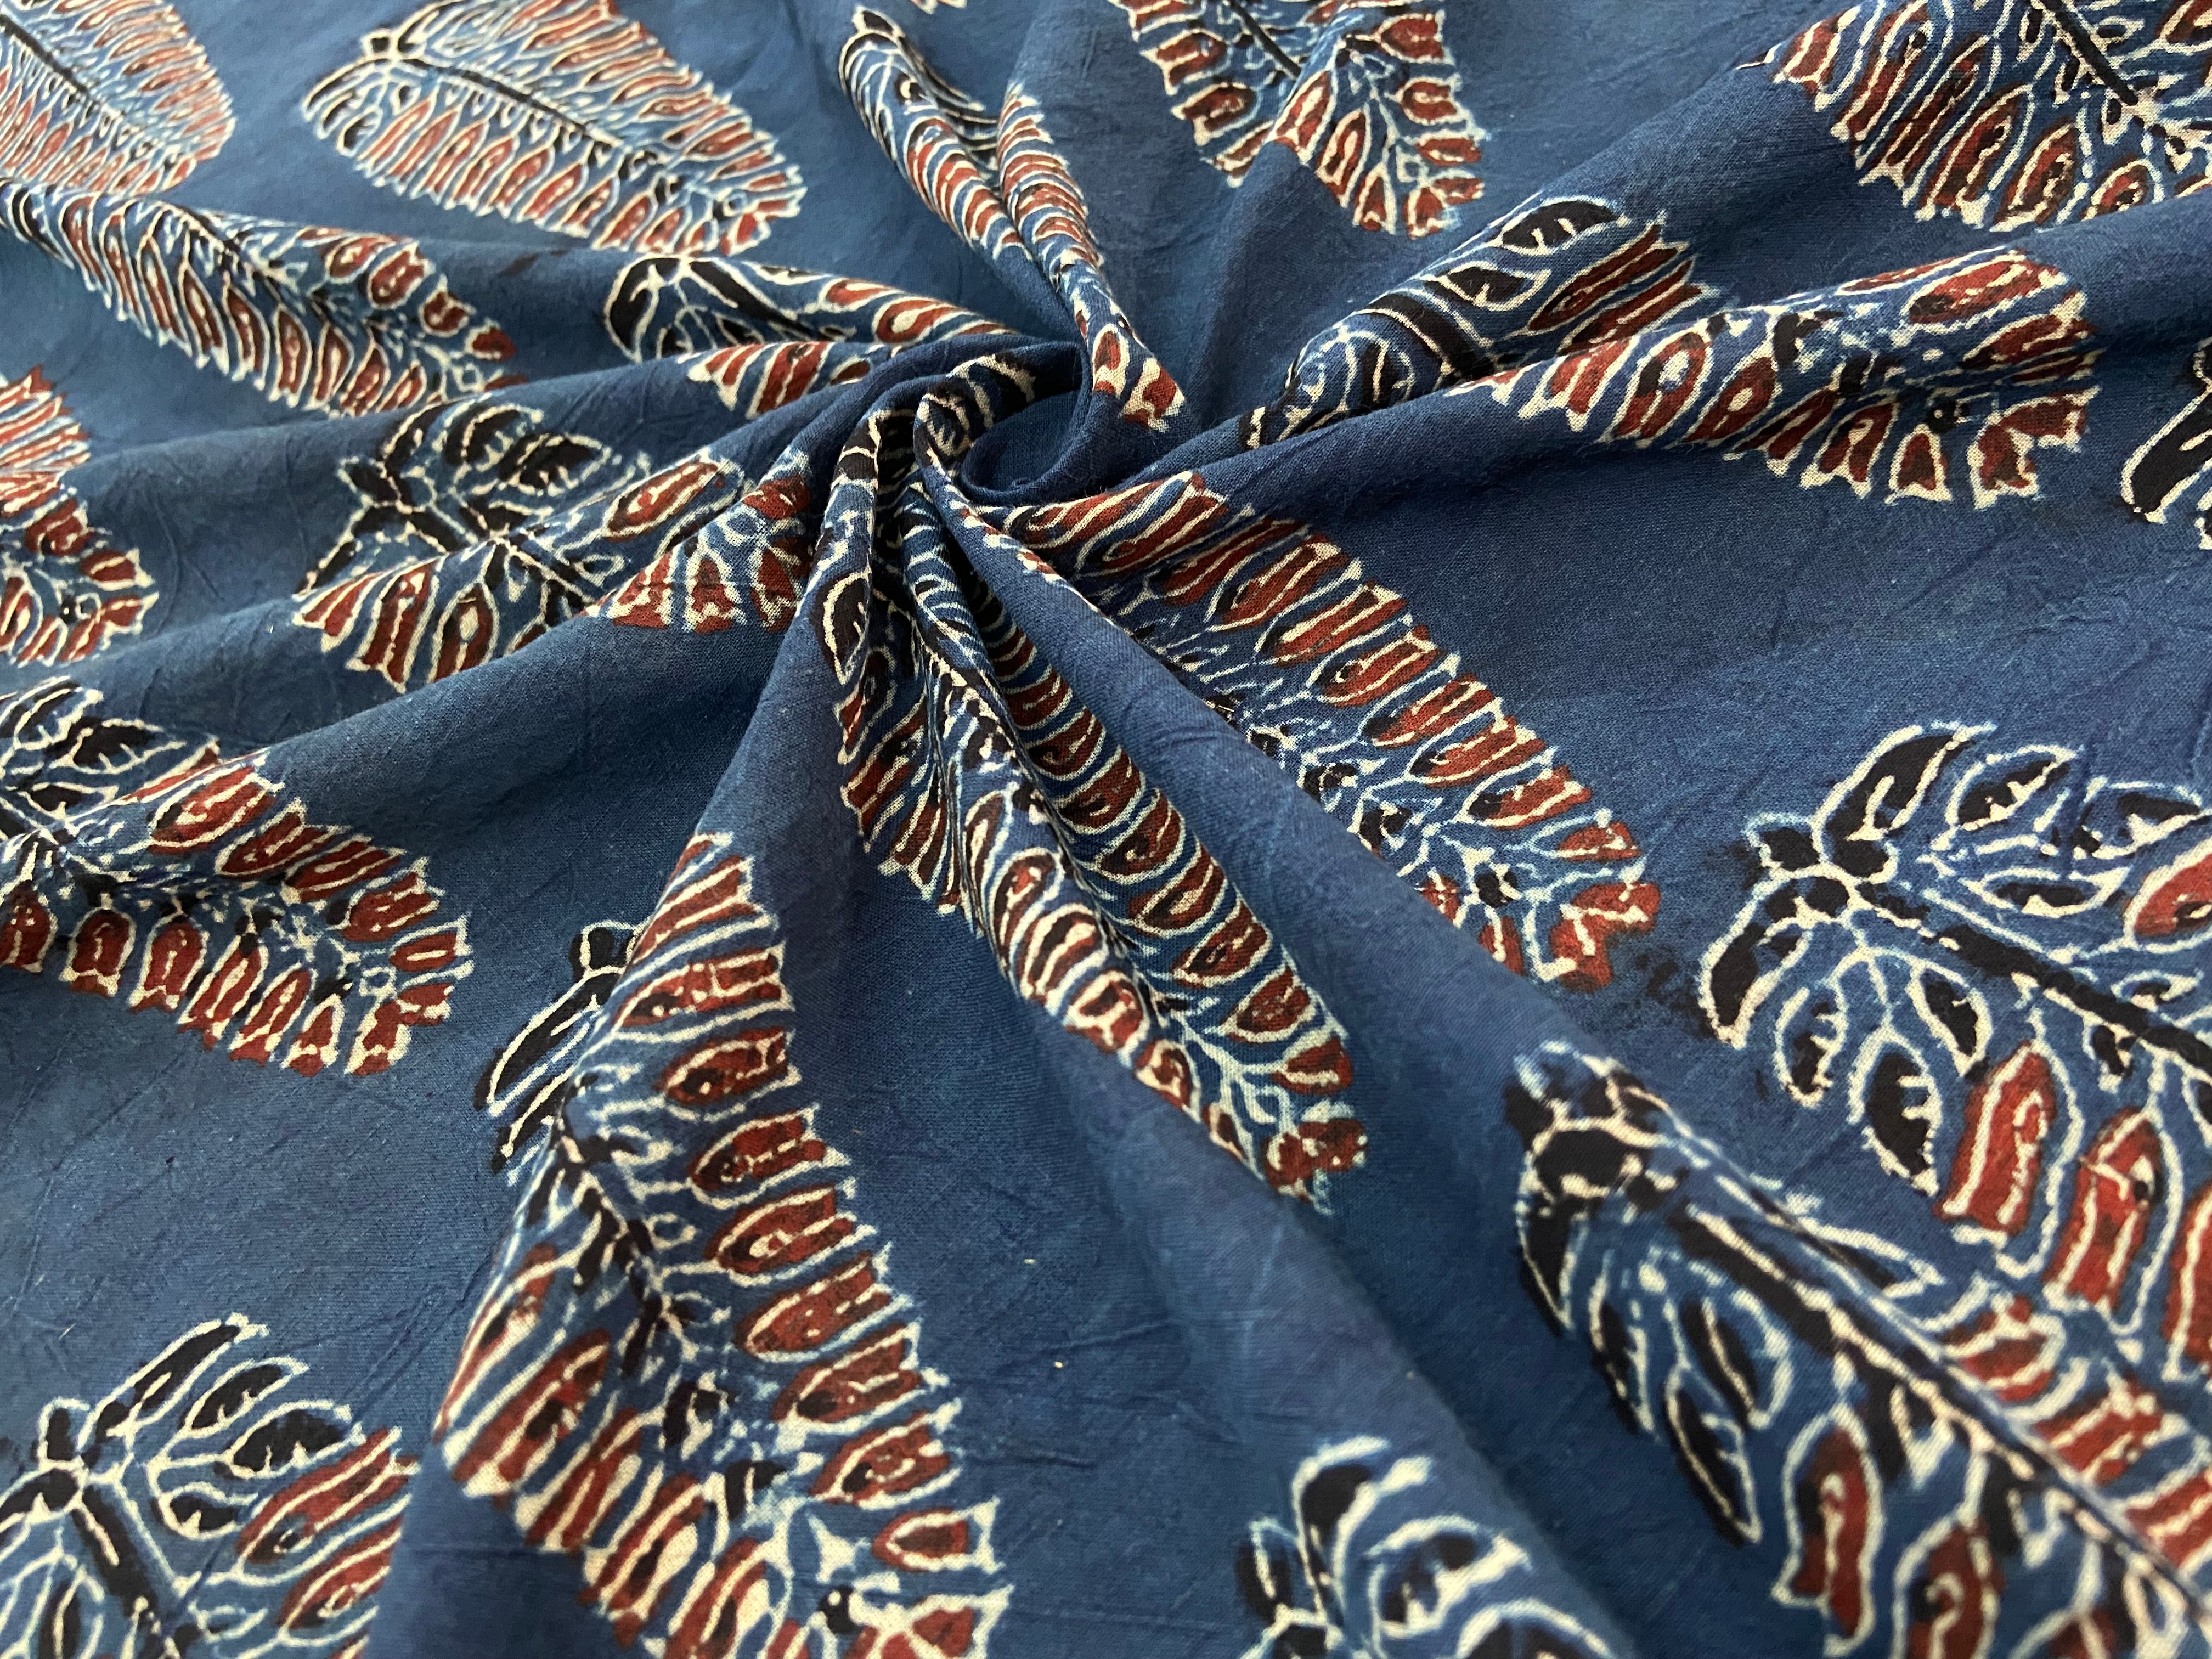 Fabric #044